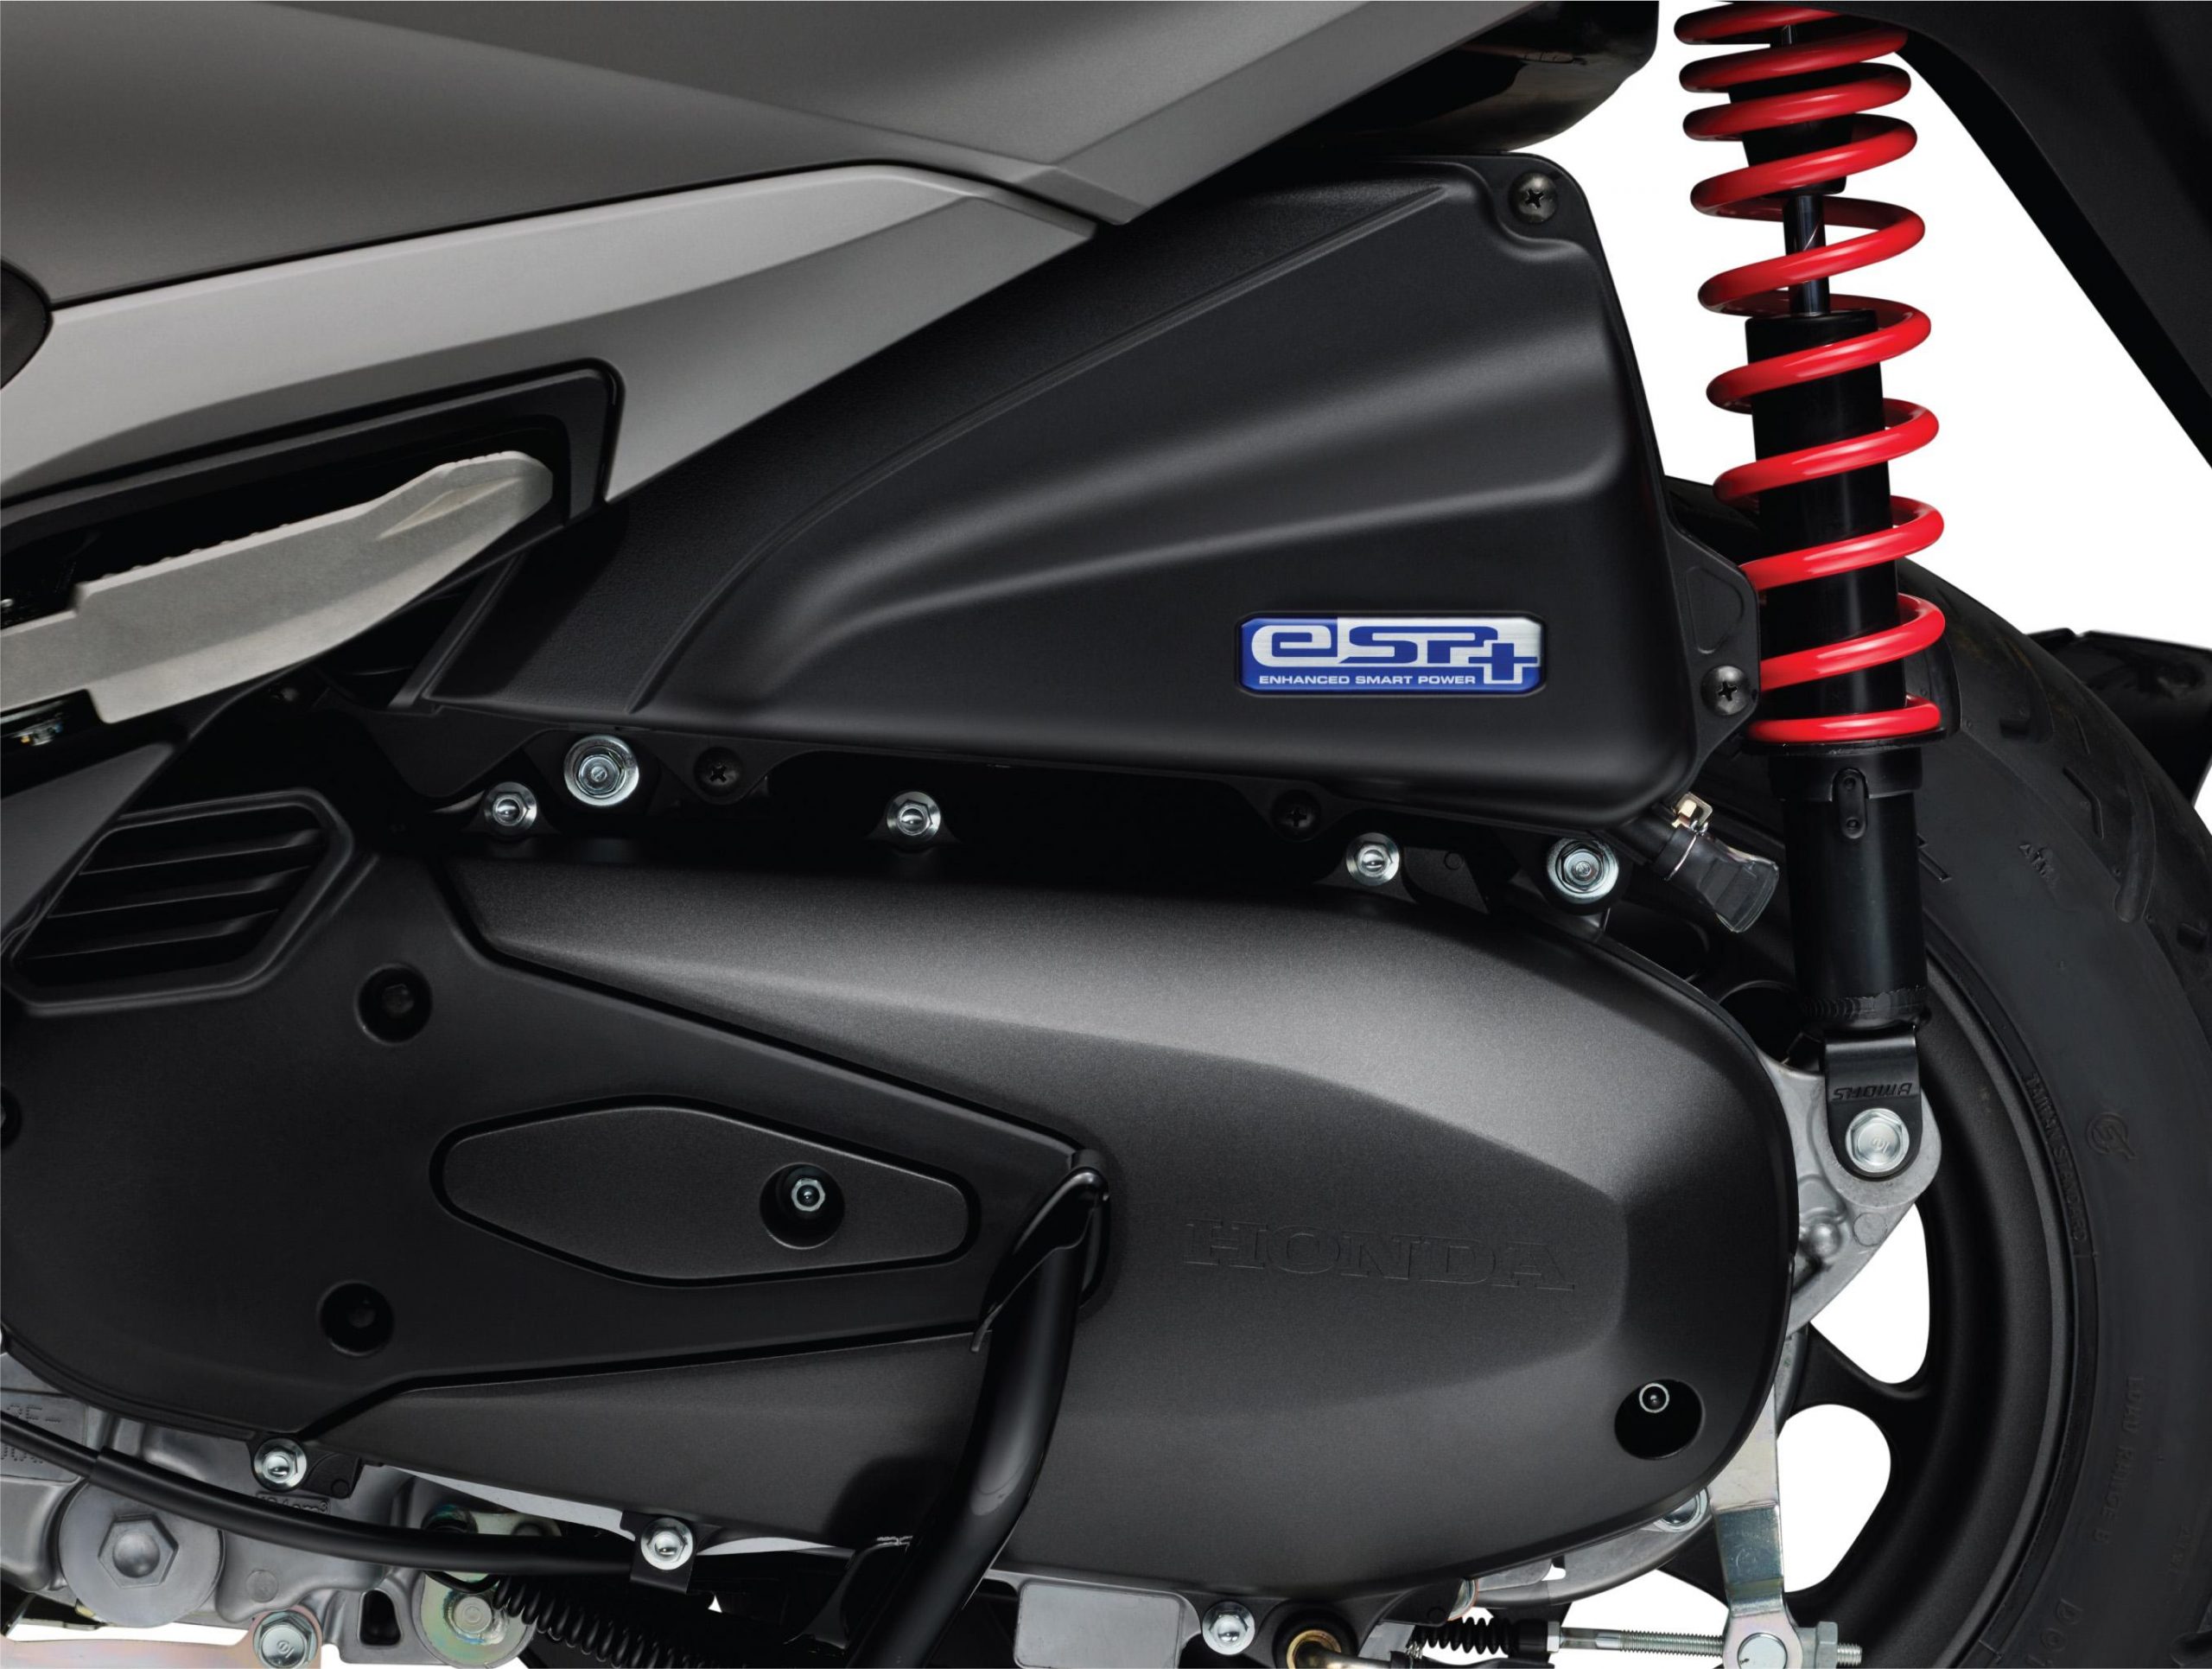 Honda ra mắt phiên bản LEAD 125cc mới giá từ 39 triệu đồng